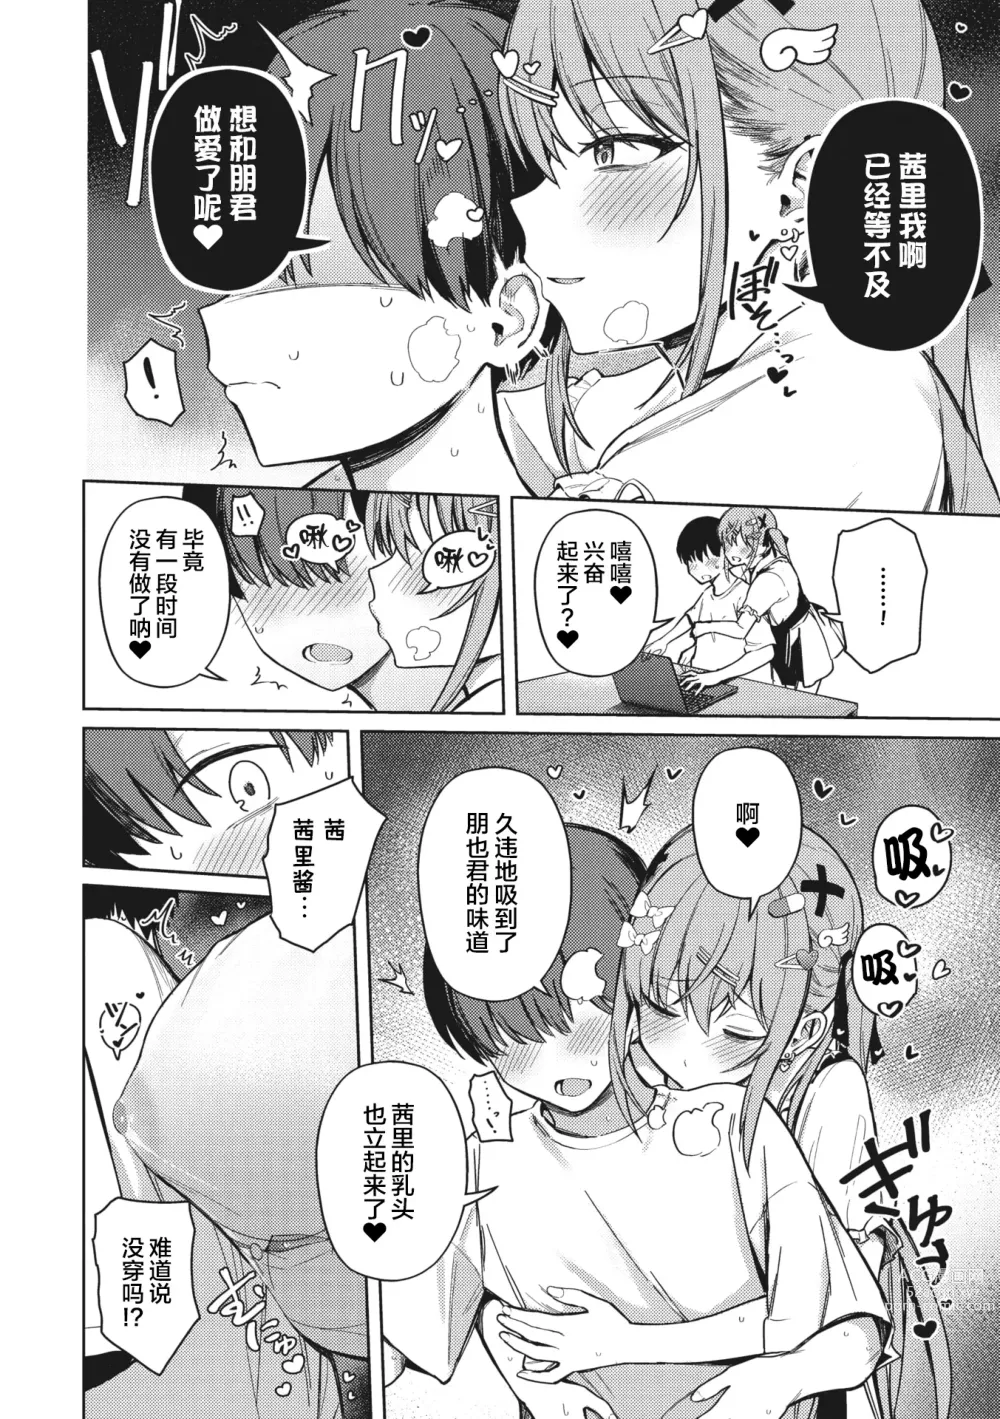 Page 12 of manga Motto! Best Match Mine Girl